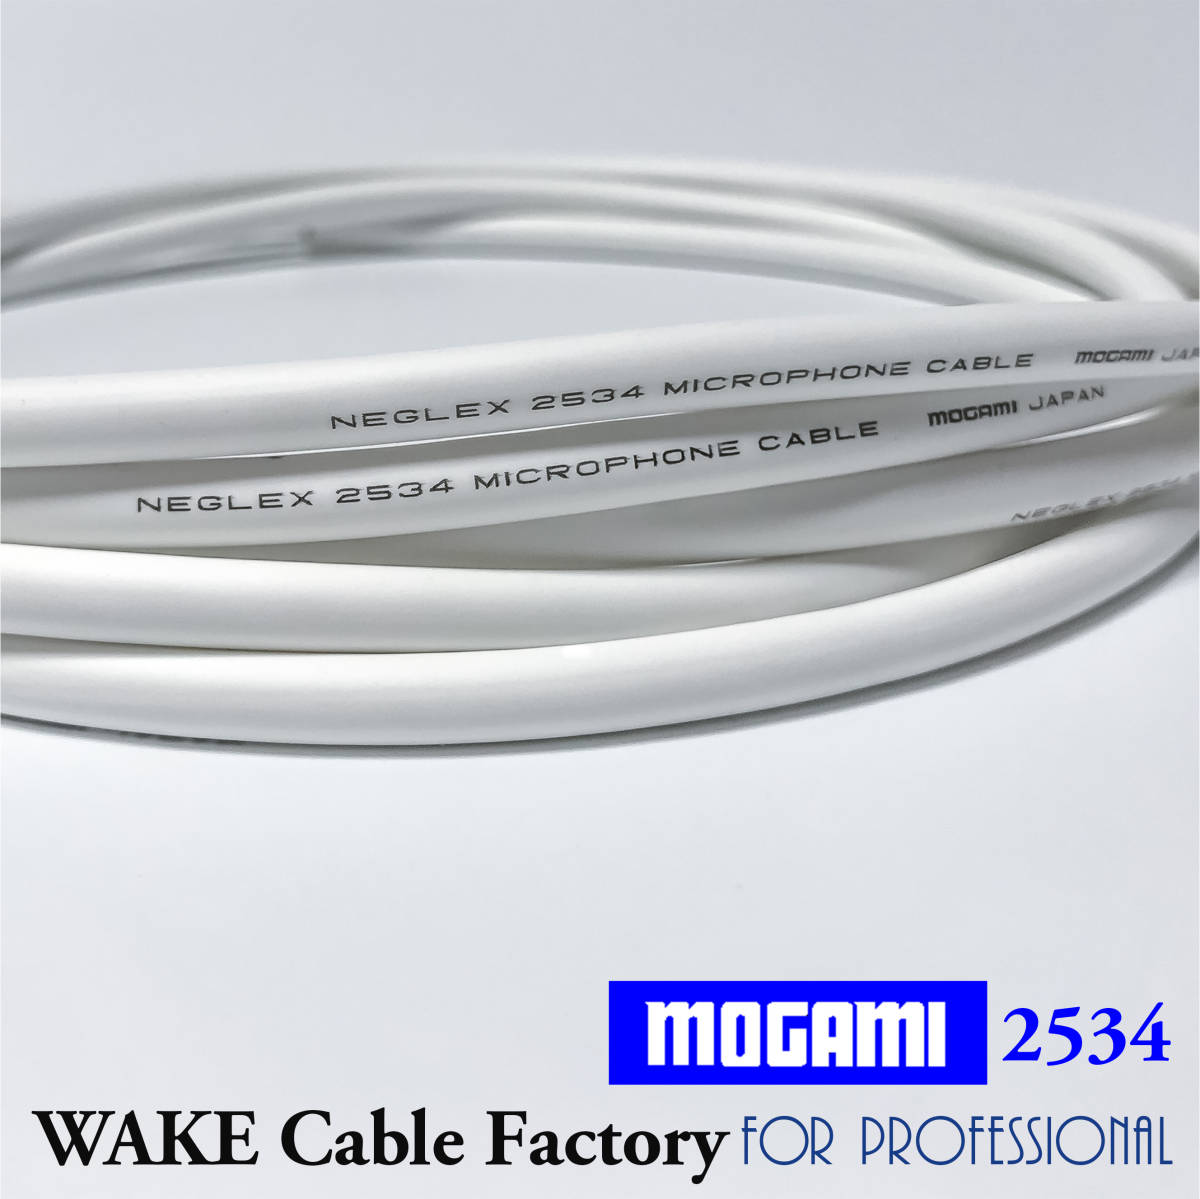  совершенно белый . высококачественный звук!MOGAMI2534* premium specification *XLR кабель 2m стерео пара * местного производства Moga mi/ Neutrik белый / баланс кабель / др. .. не безусловно 